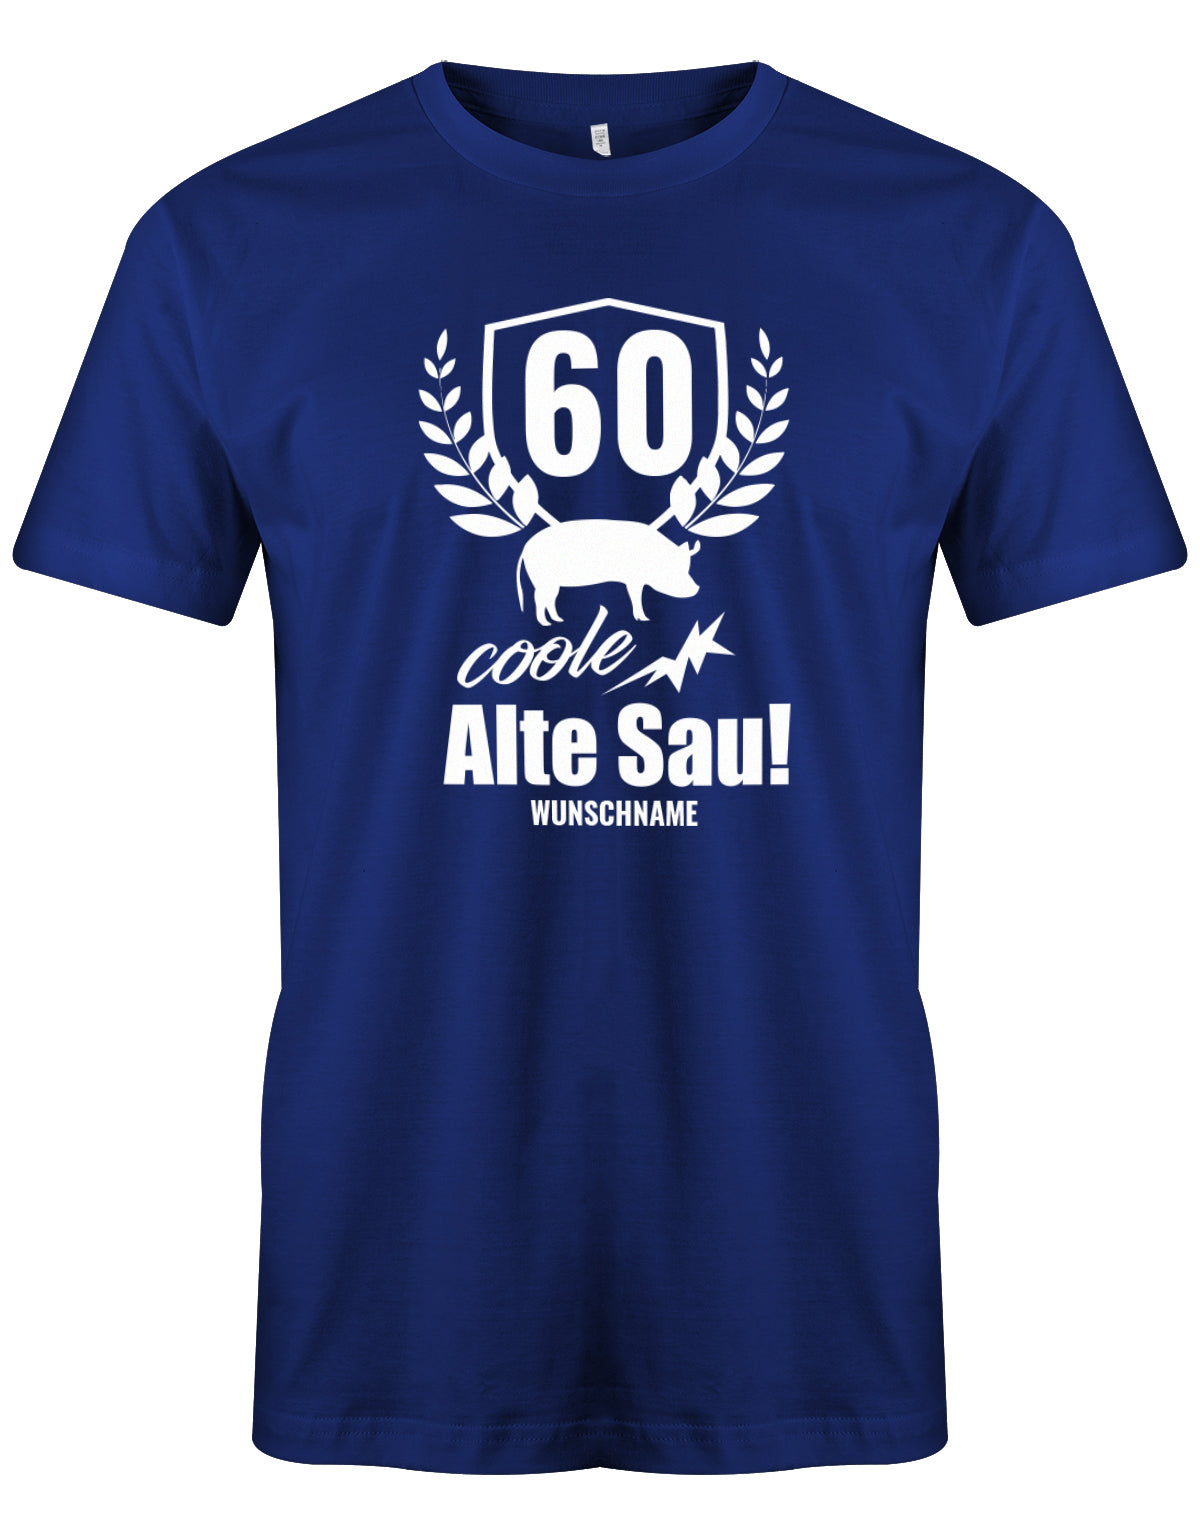 Lustiges T-Shirt zum 60. Geburtstag für den Mann Bedruckt mit 60 coole Alte Sau! mit Wunschname. Royalblau